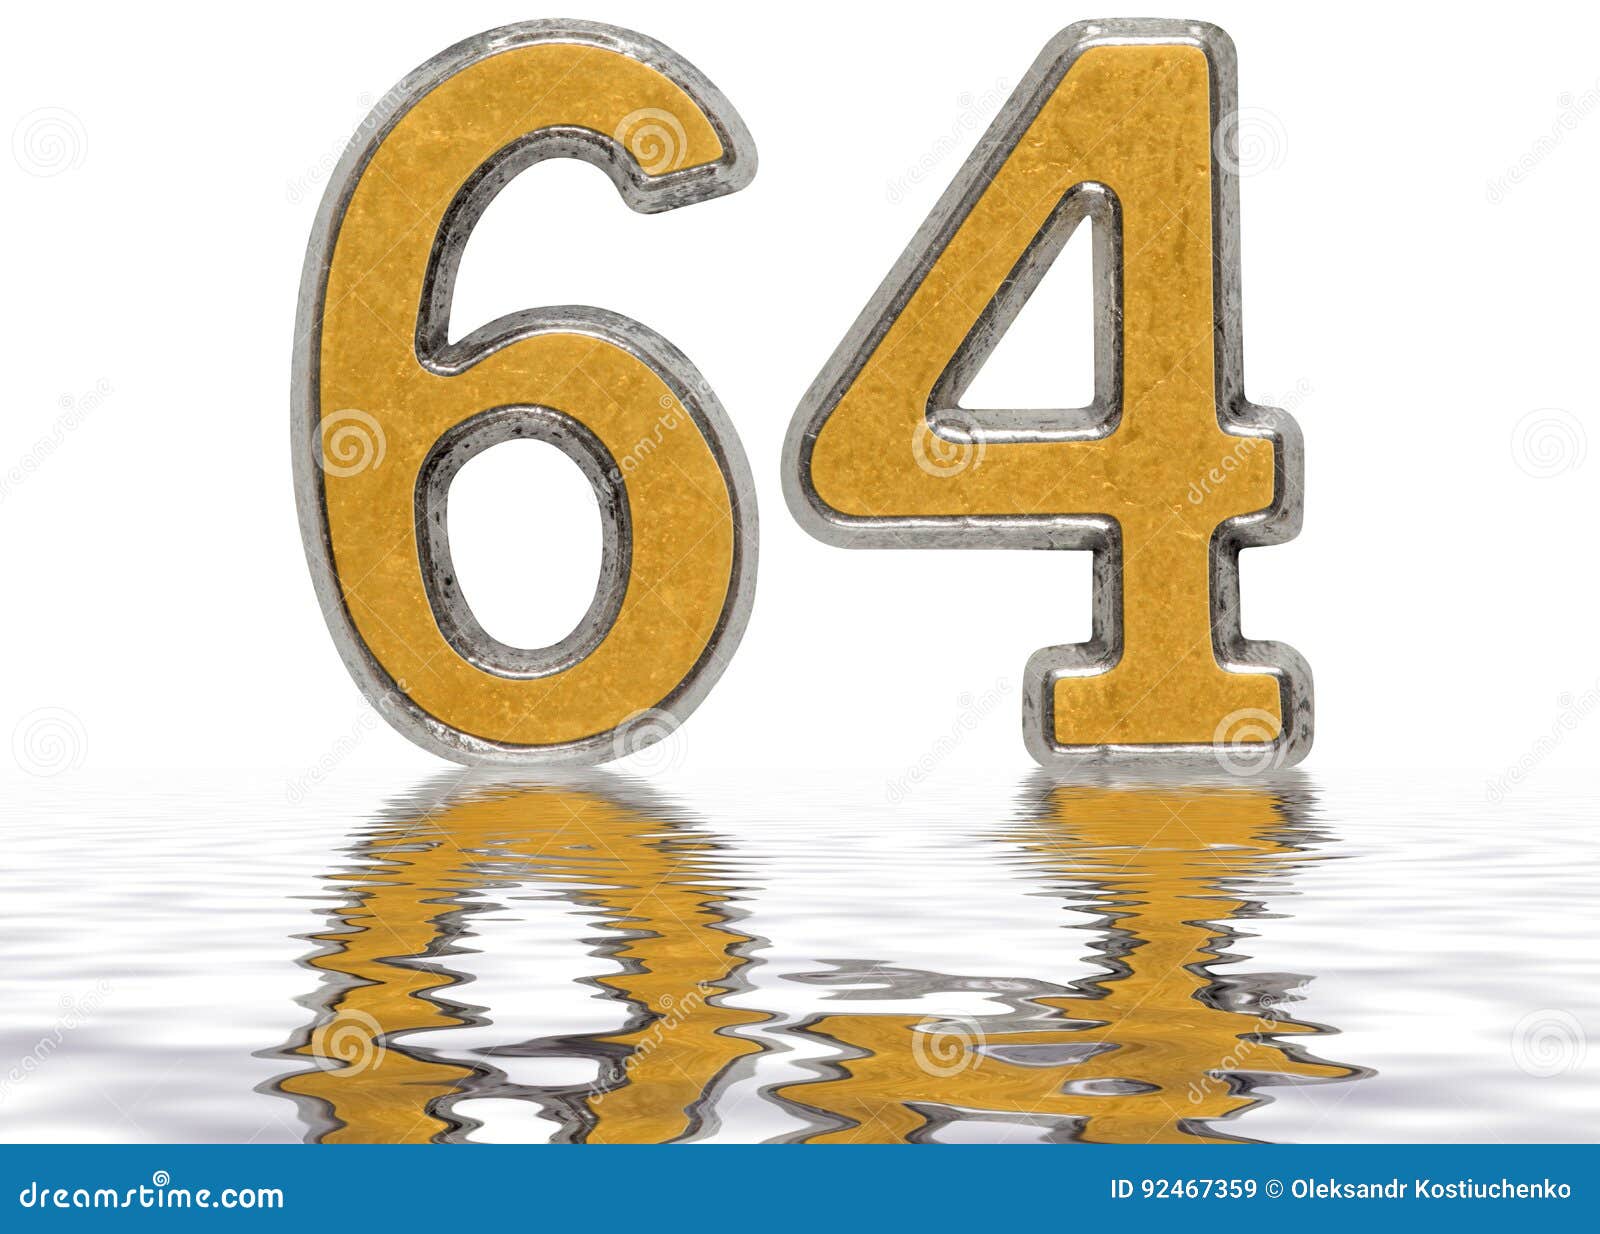 Сто шестьдесят четыре. Цифра 64. Красивая цифра 64. Цифра 64 красивая на фоне. Шестьдесят четыре 64.